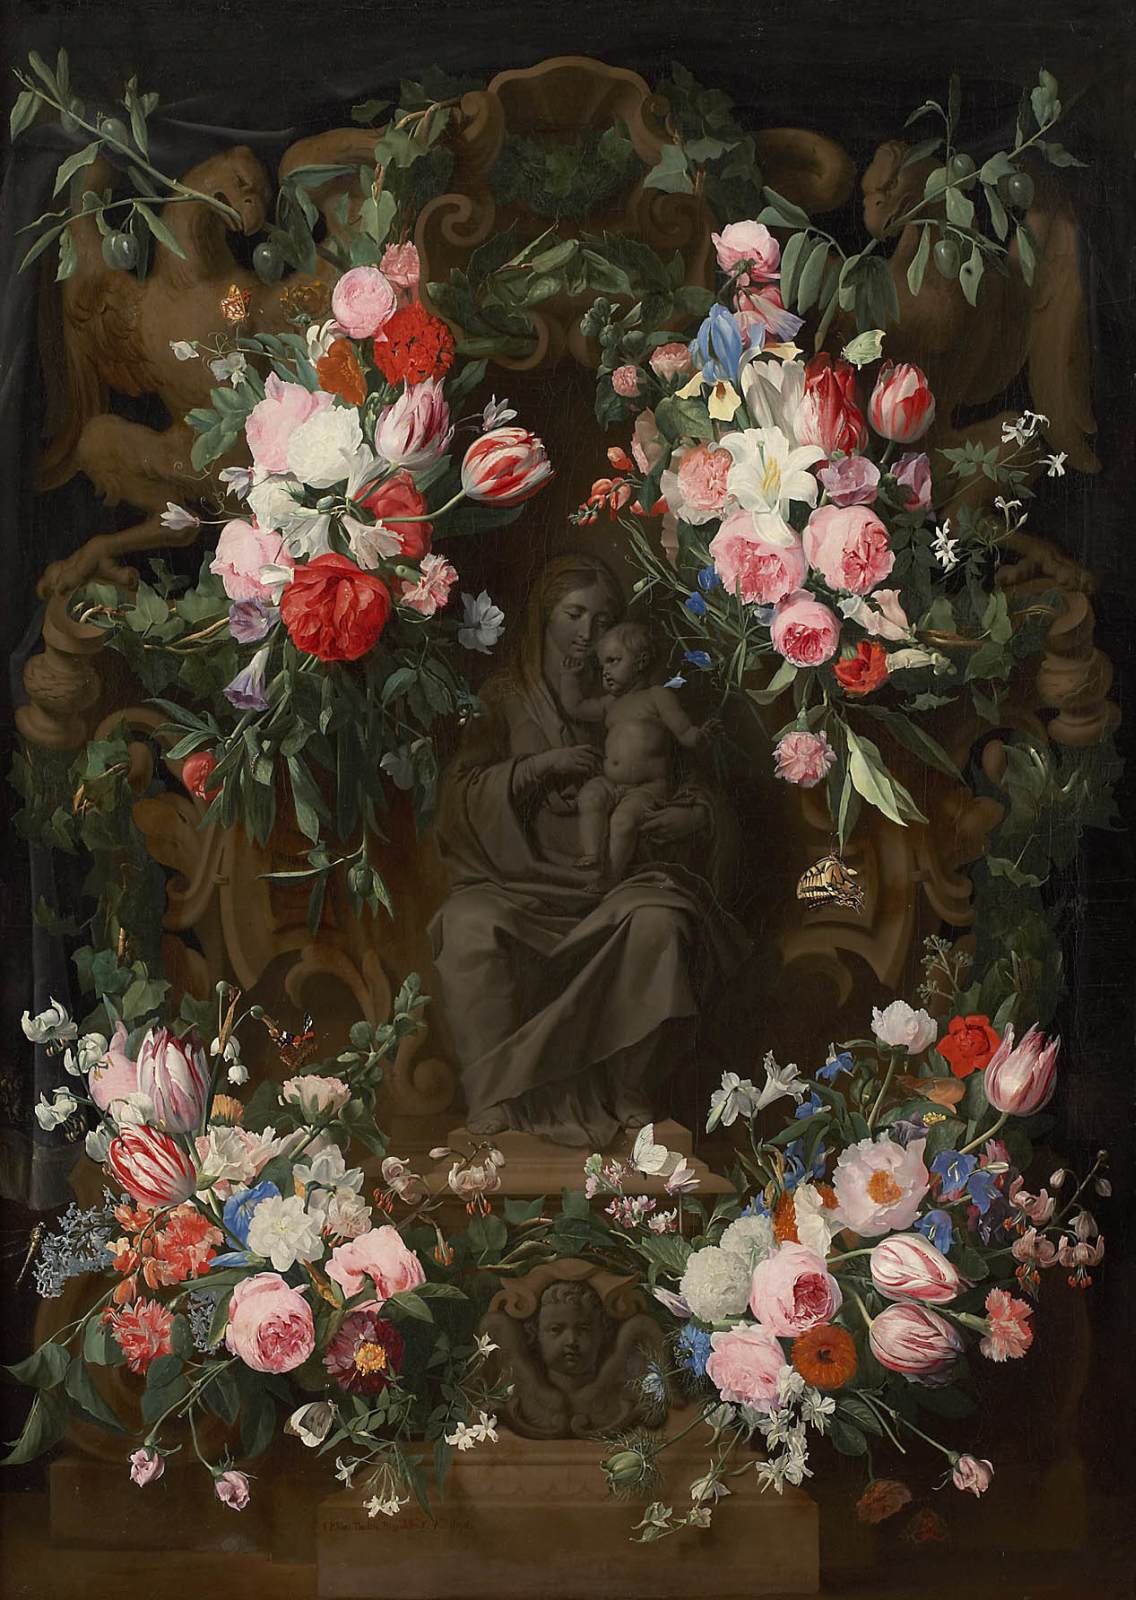 Guirlandas de flores em torno de uma Virgem sentada